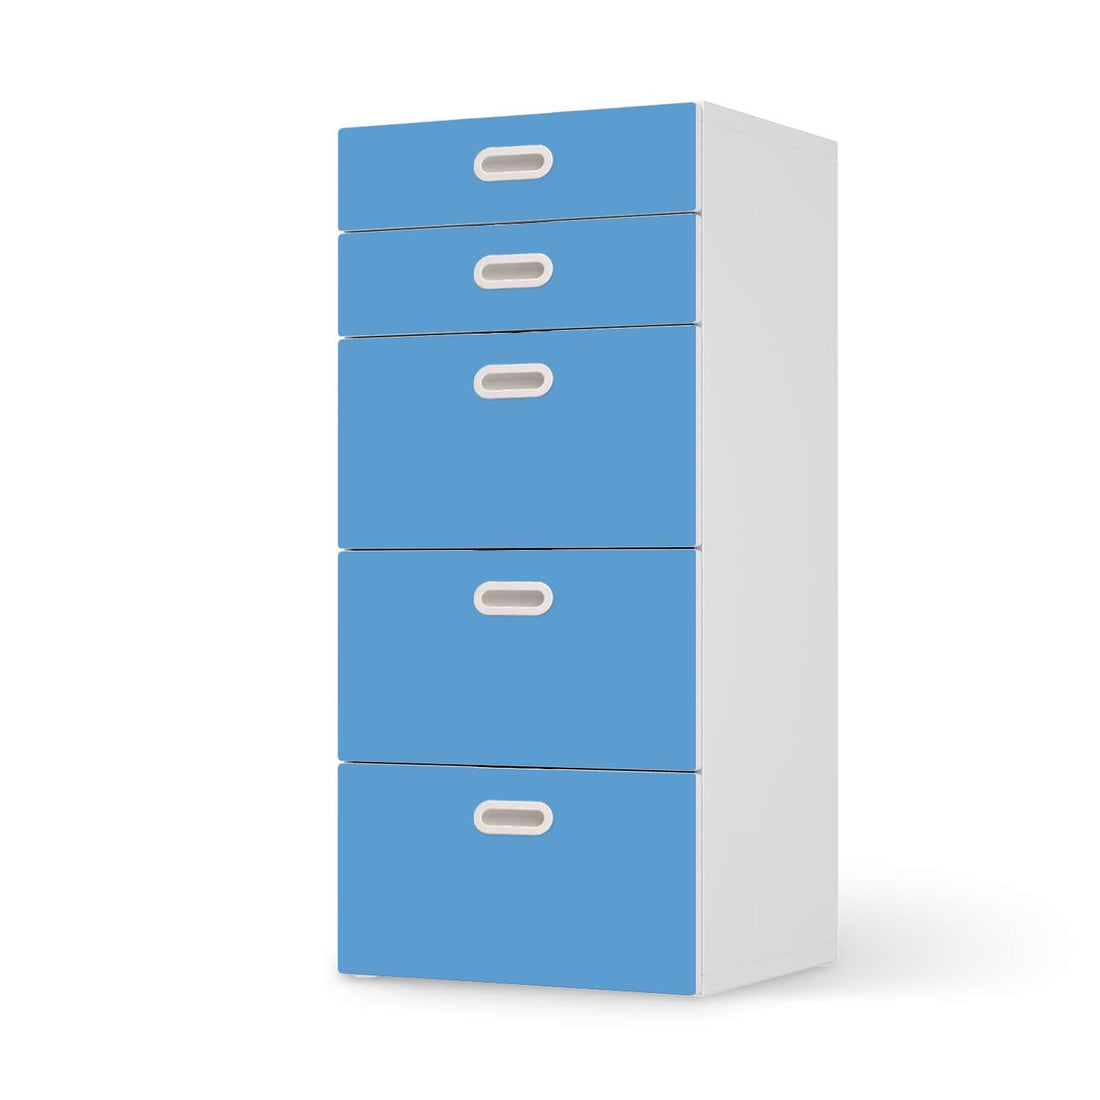 Möbel Klebefolie Blau Light - IKEA Stuva / Fritids Kommode - 5 Schubladen  - weiss